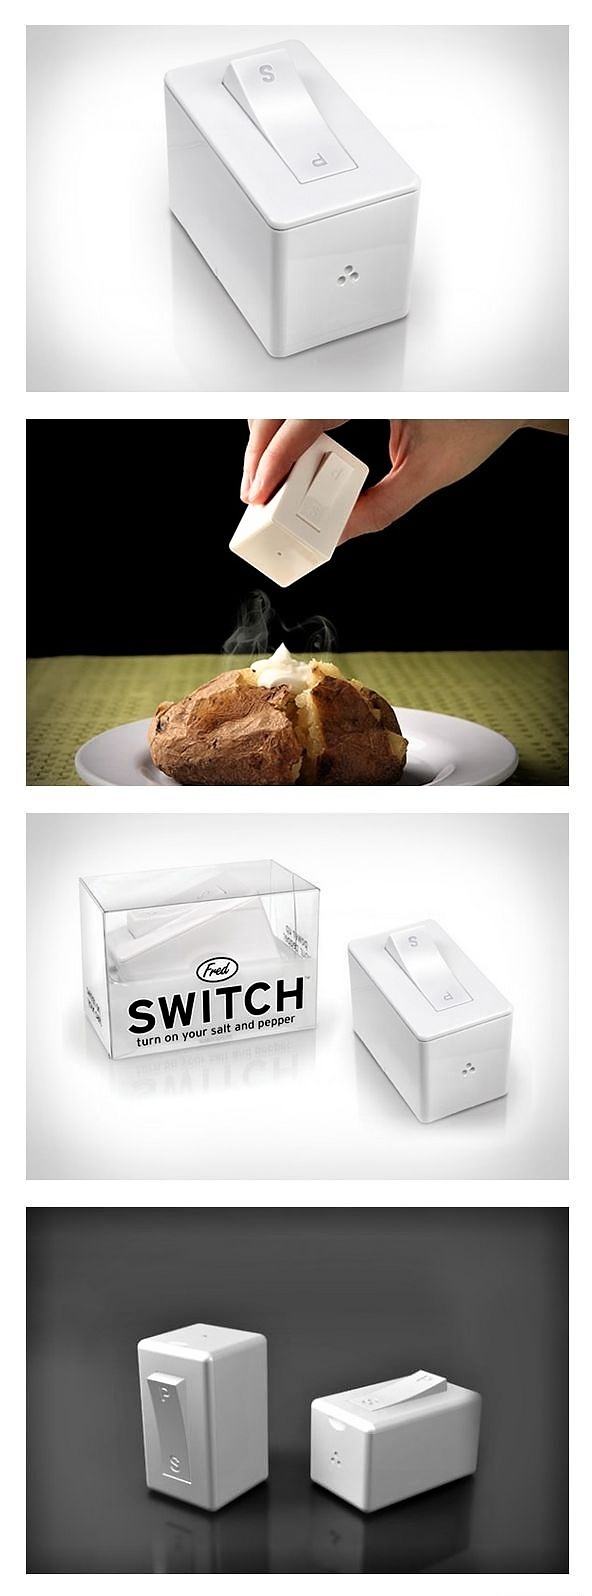 Obrázek Switch 19-01-2012